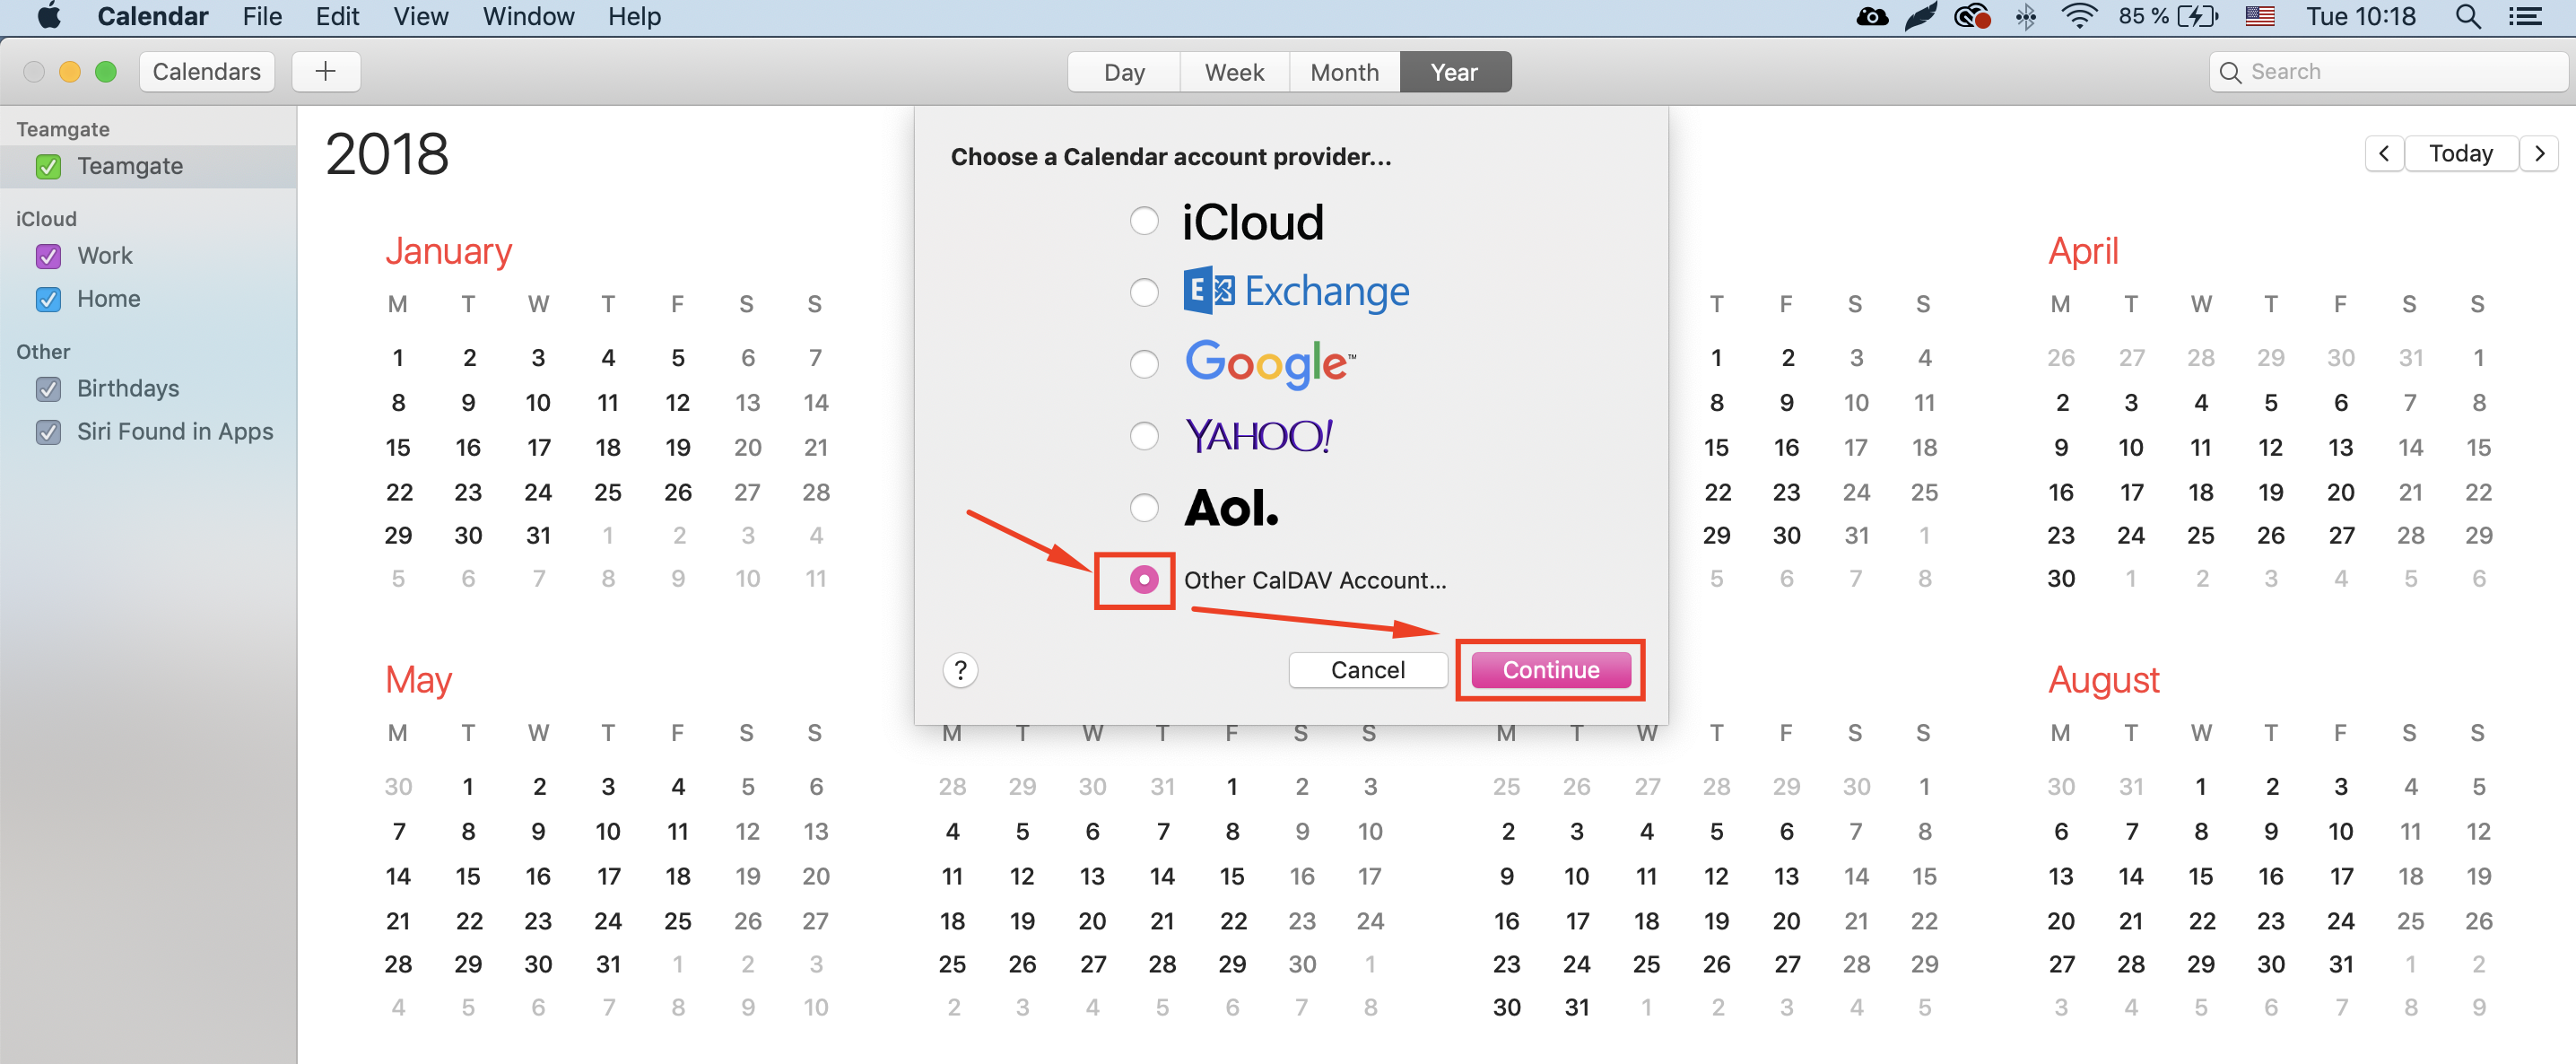 How do I sync Teamgate calendar with Mac calendar using CalDAV? Teamgate